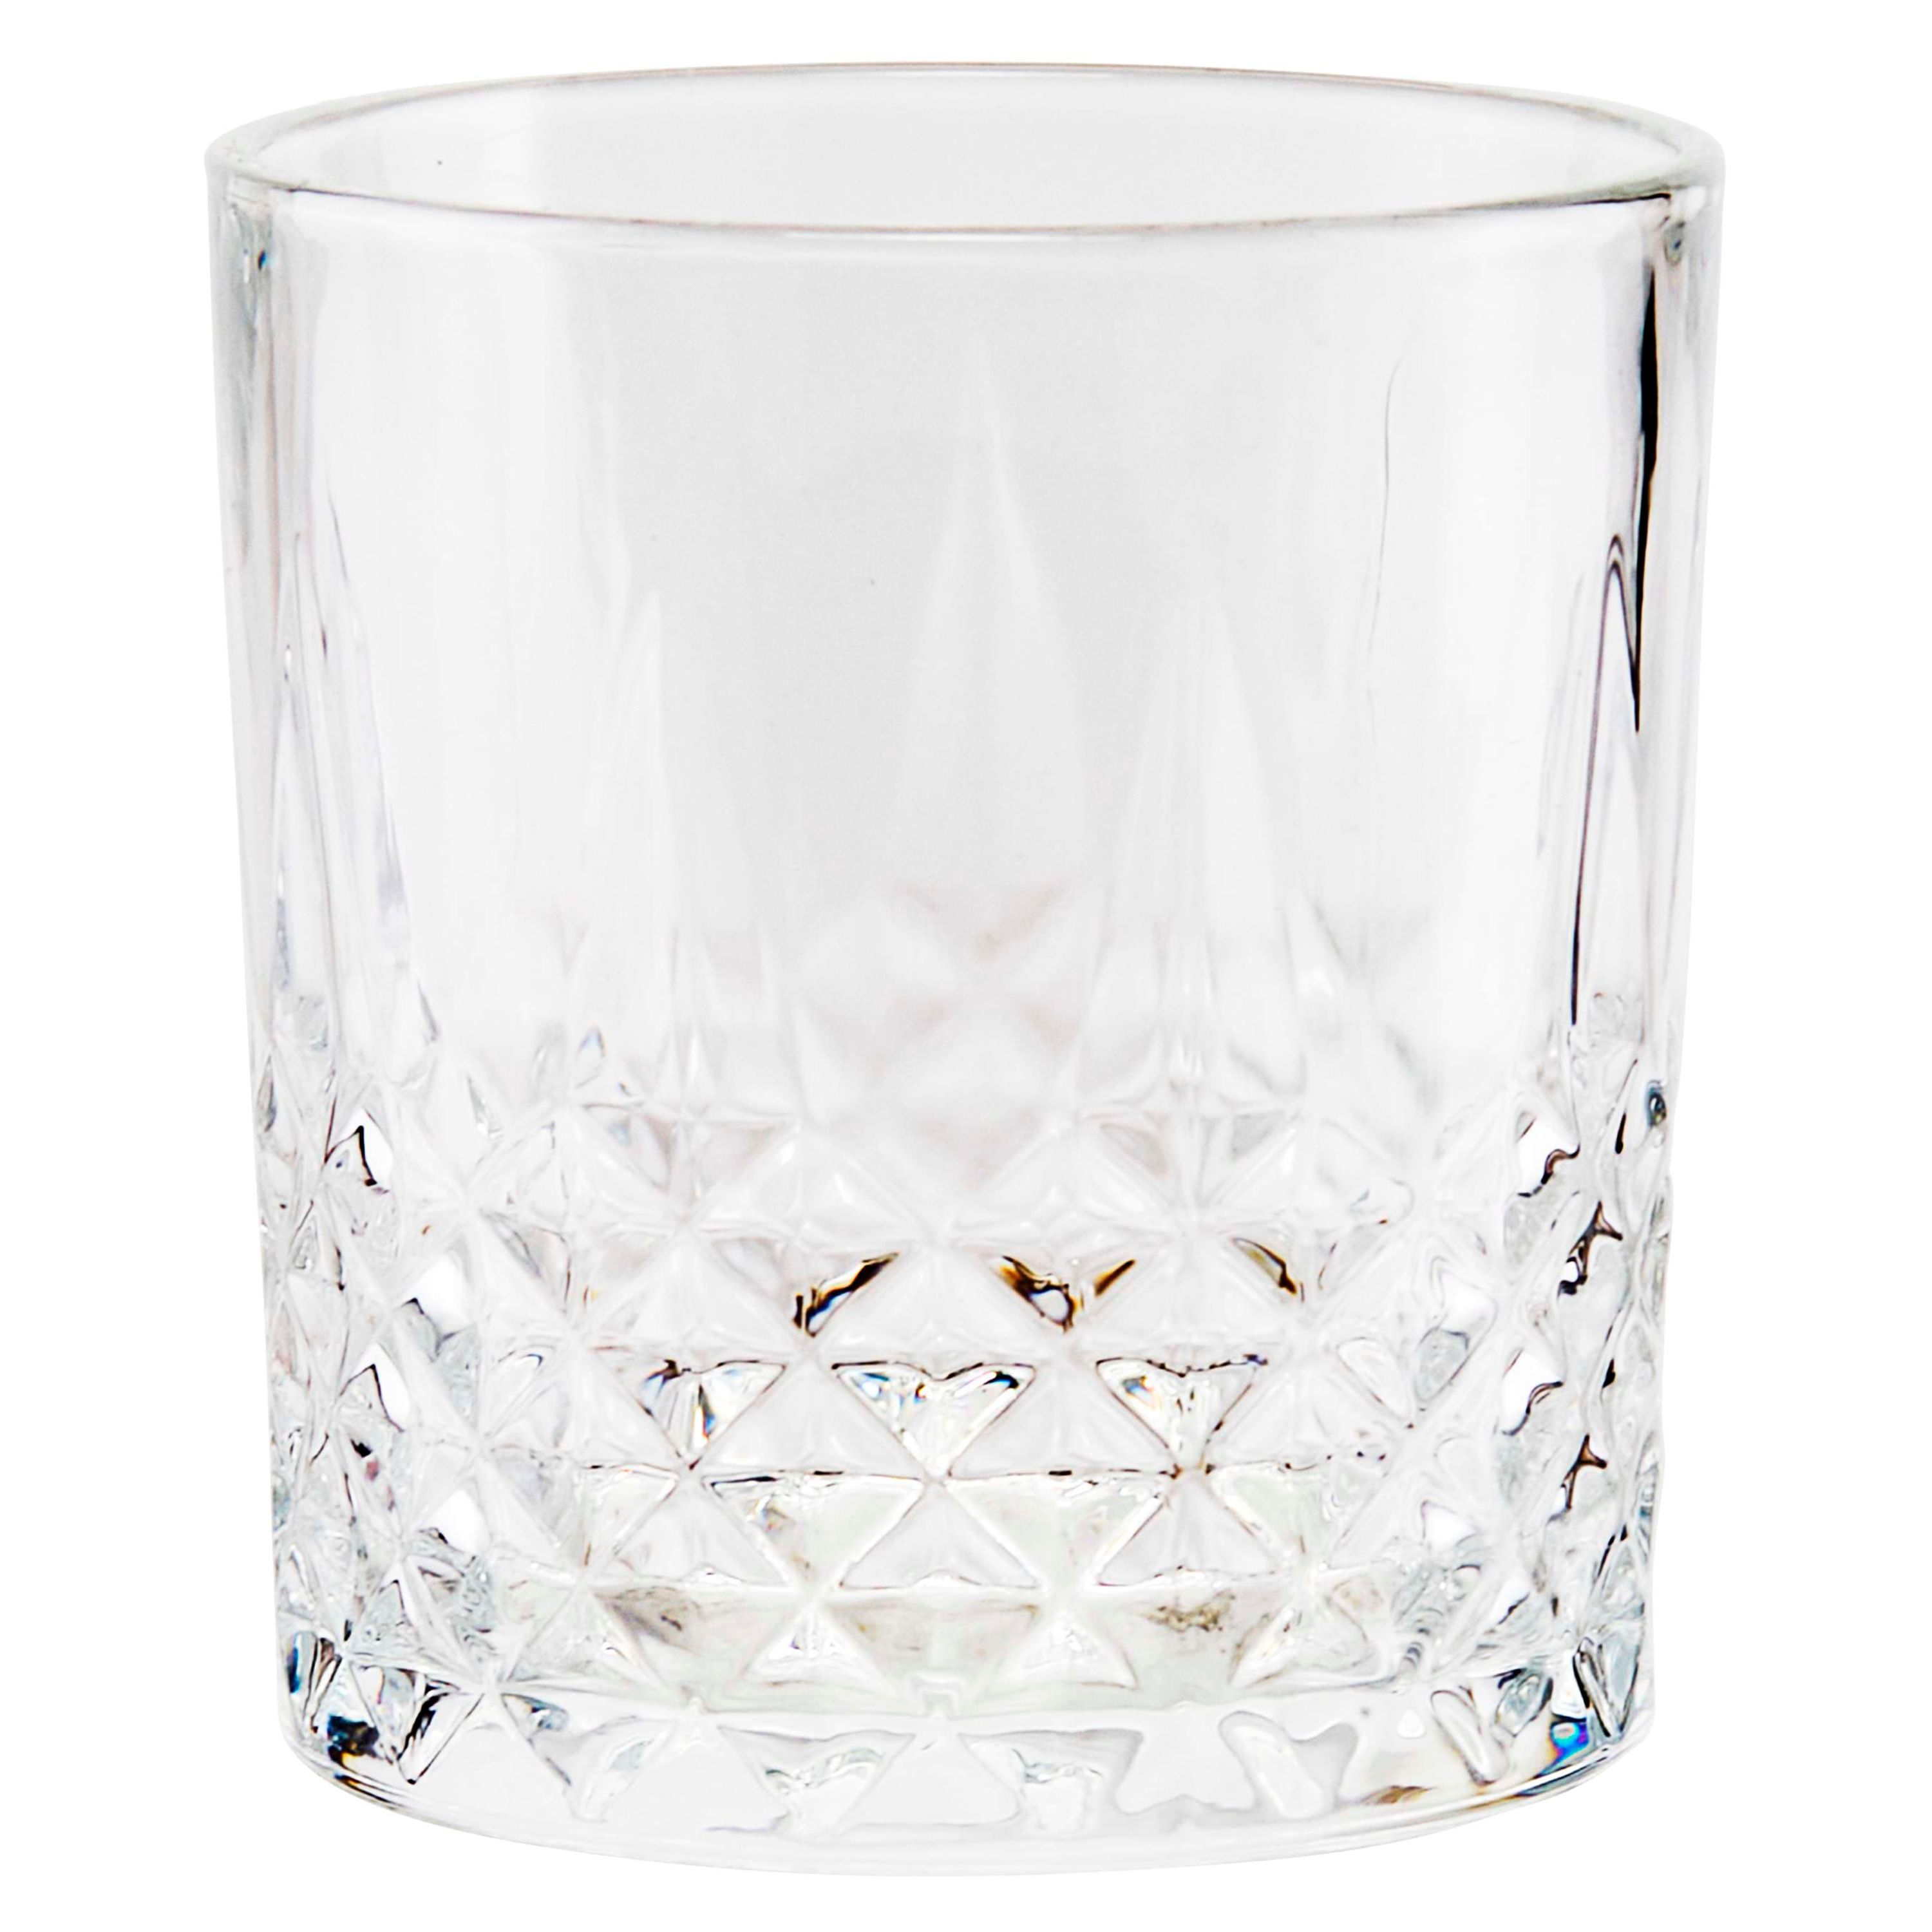 Viski Irving - Juego de 2 vasos de cristal de cristal transparente de alta  calidad, cristalería con borde de bronce, elegante juego de regalo de vasos